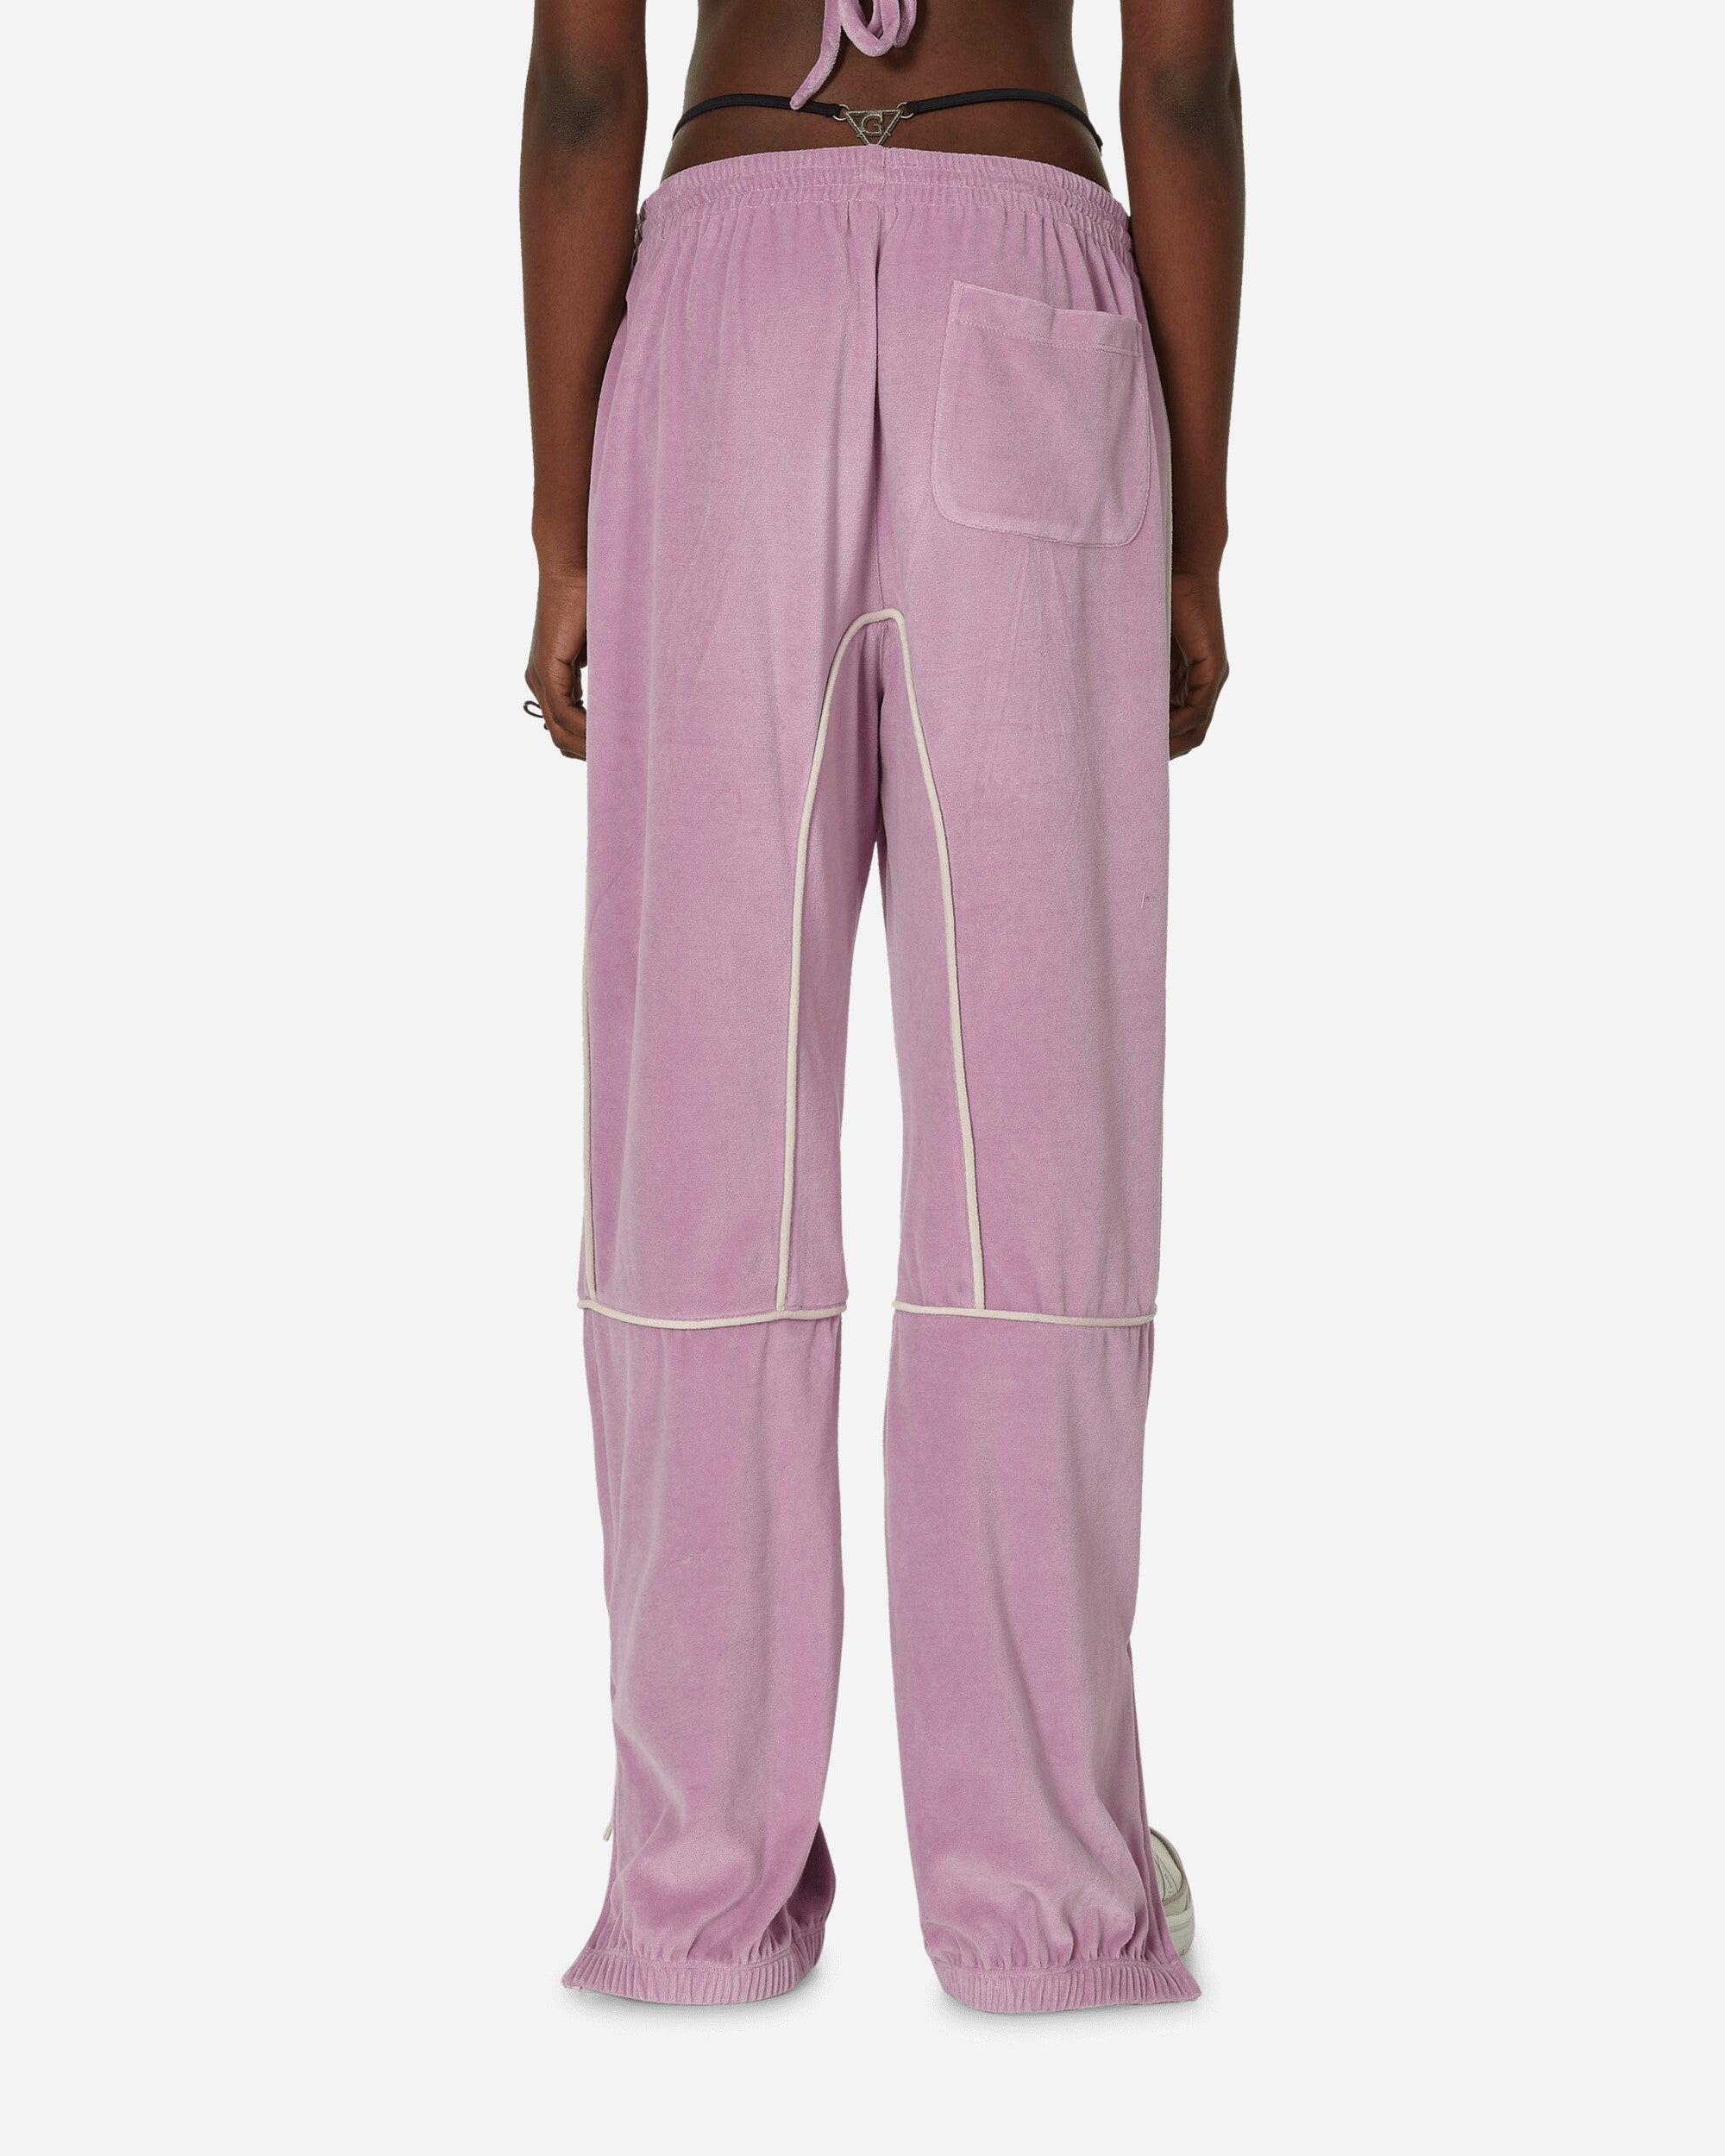 Priscavera Wmns Velour Track Pants Lavender Pants Track Pants 005076-184 LV